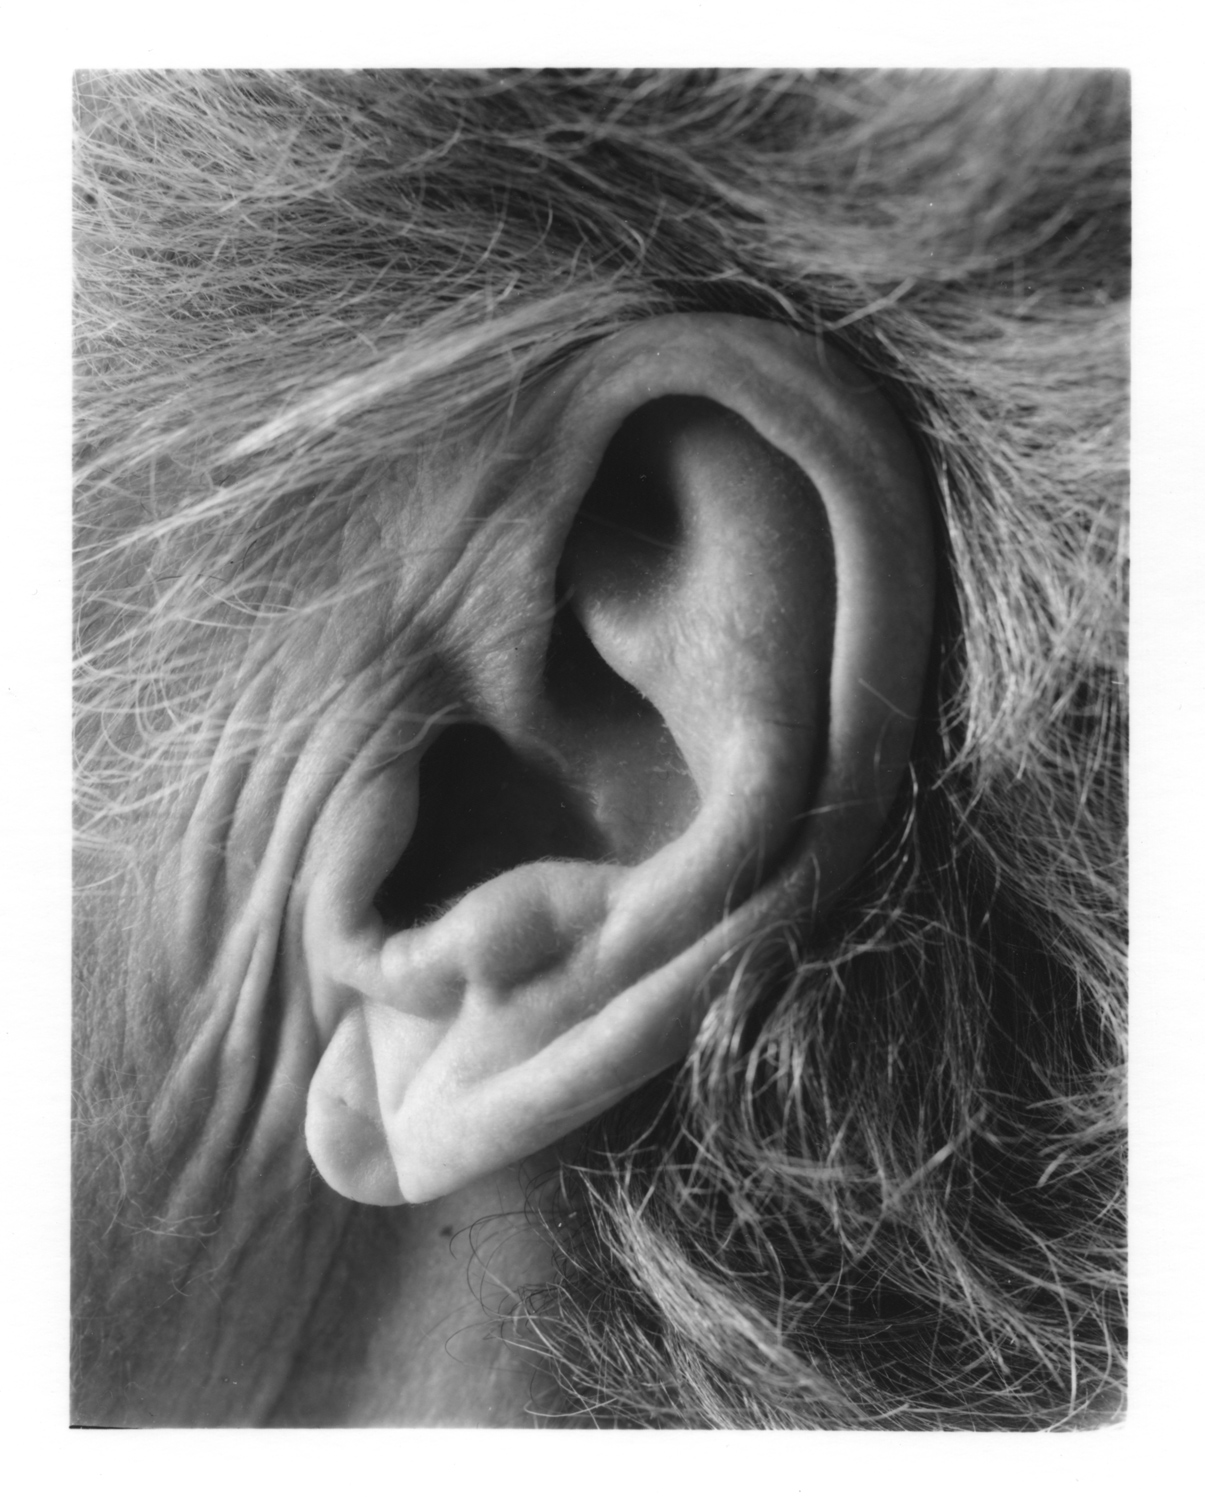 LEFT EAR